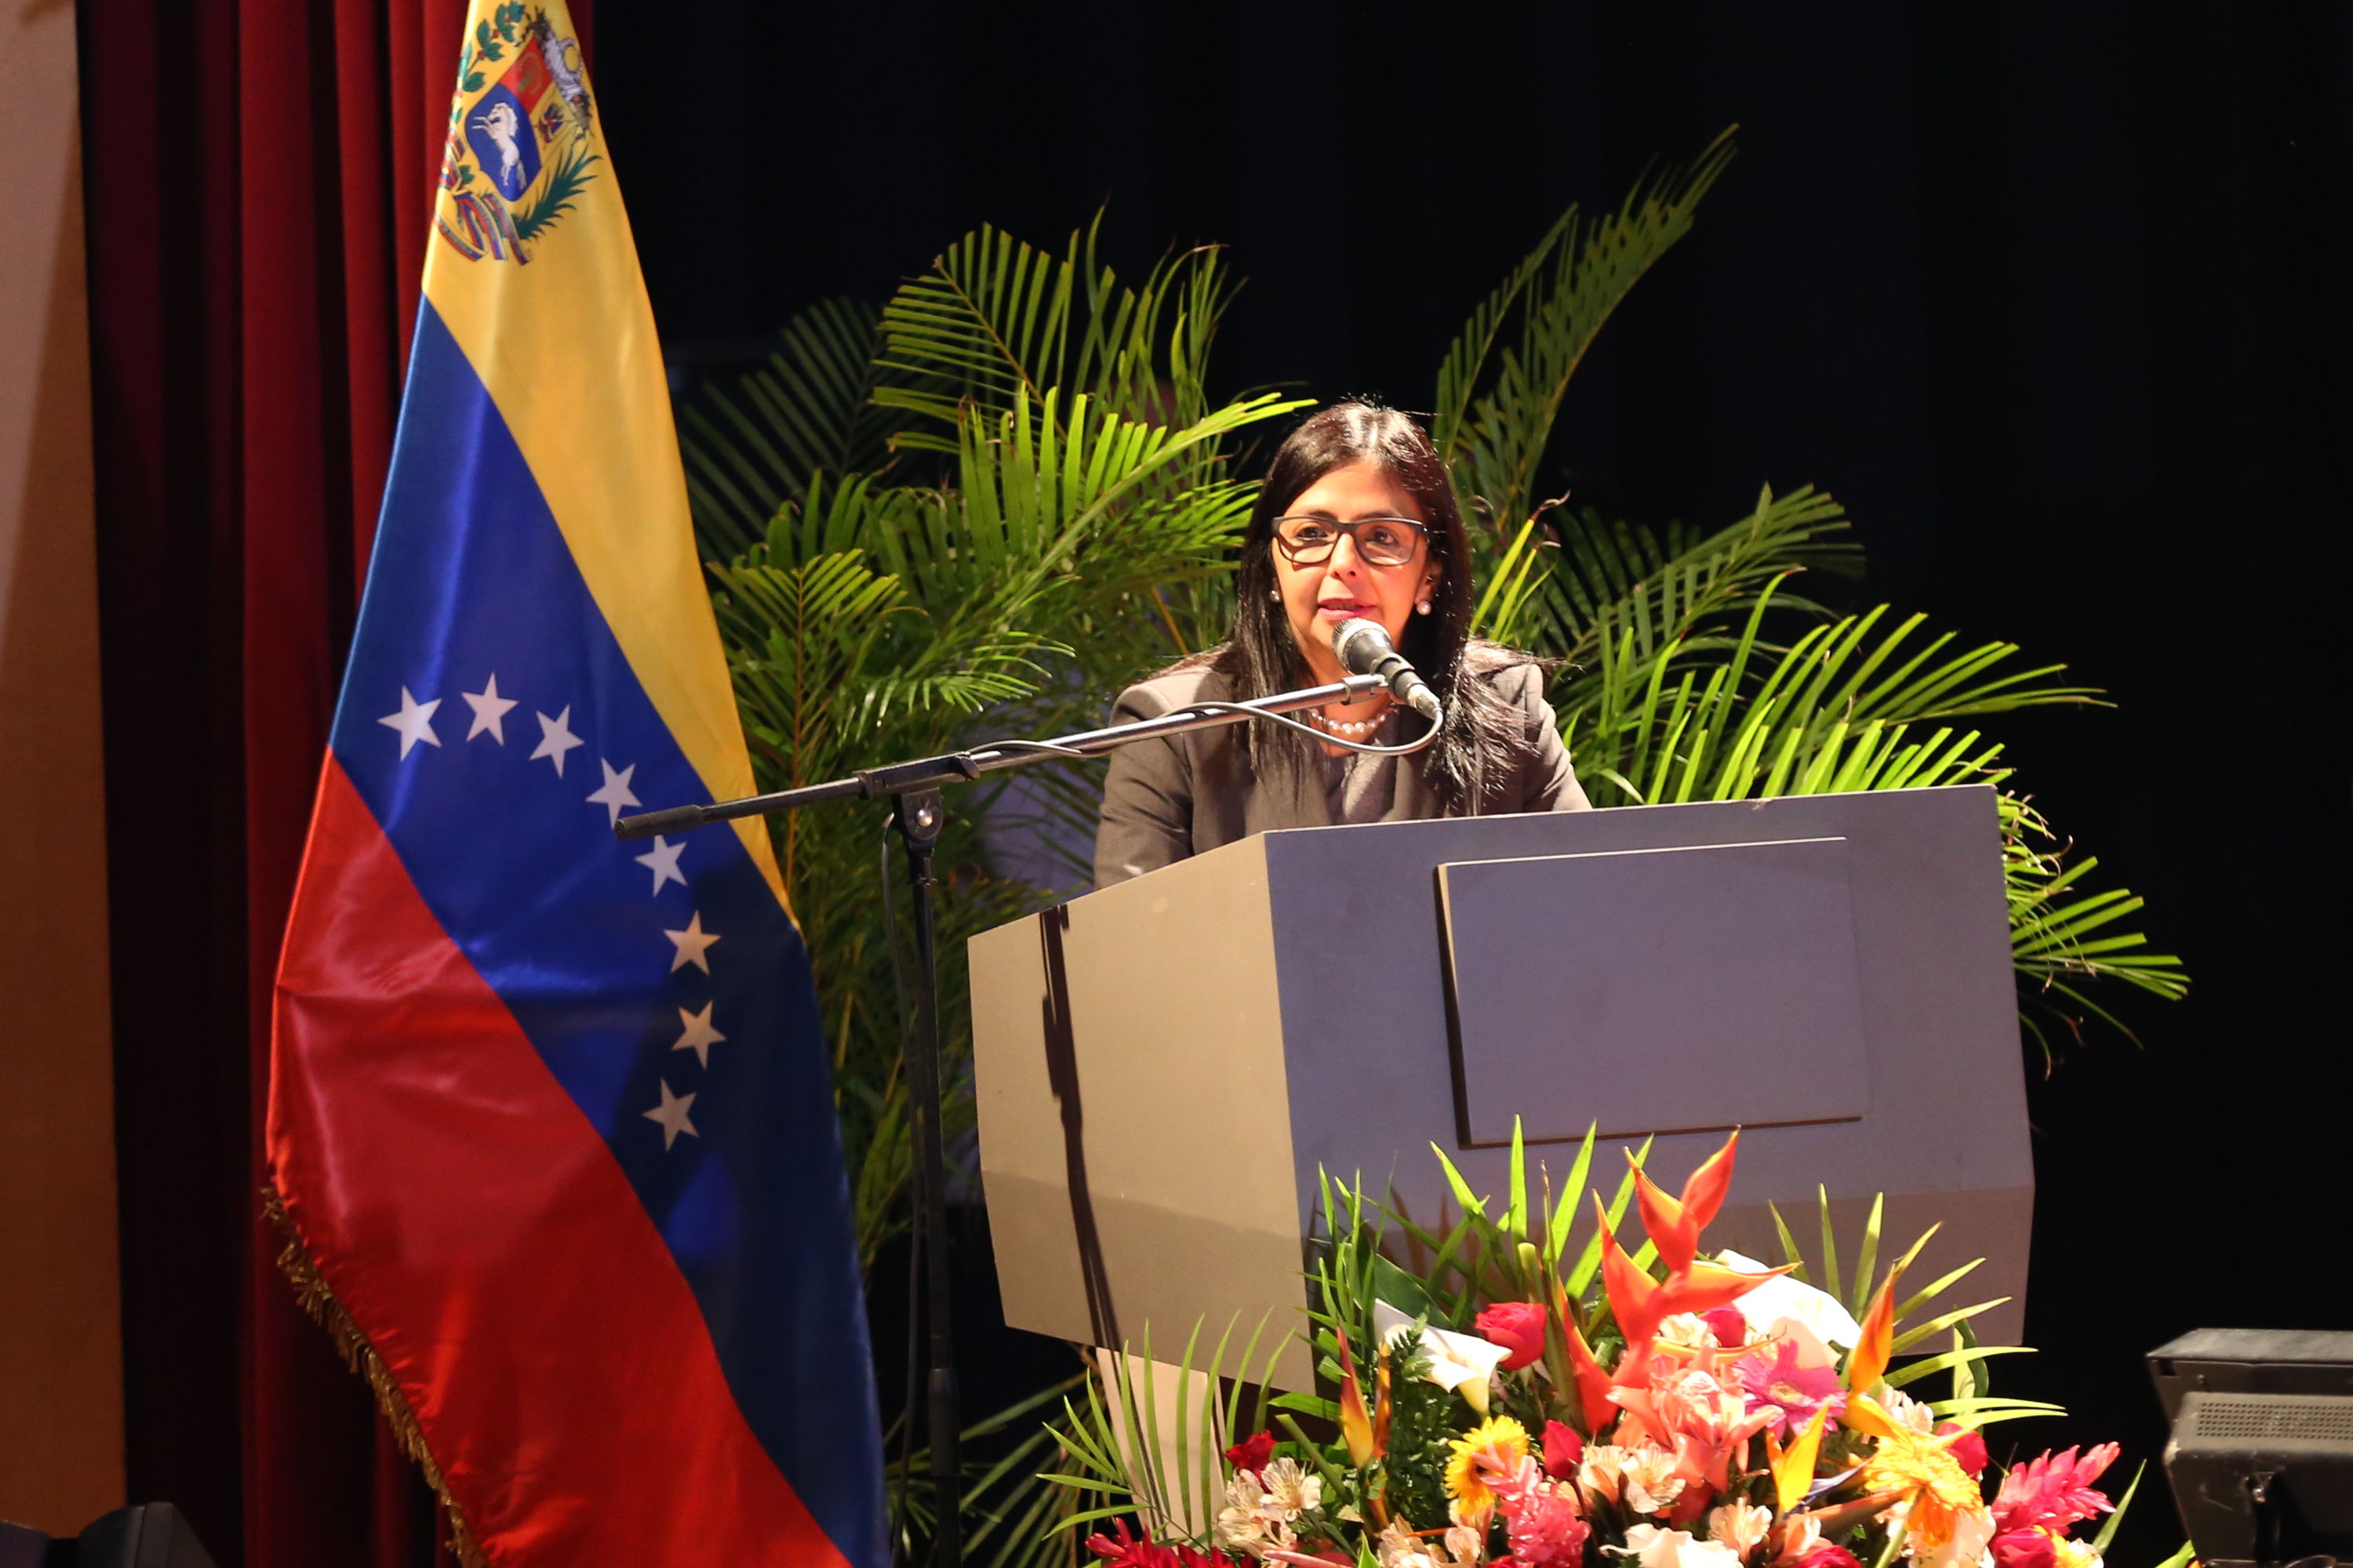 Rodríguez recalcó que Venezuela sigue fuerte en defensa de la soberanía nacional.